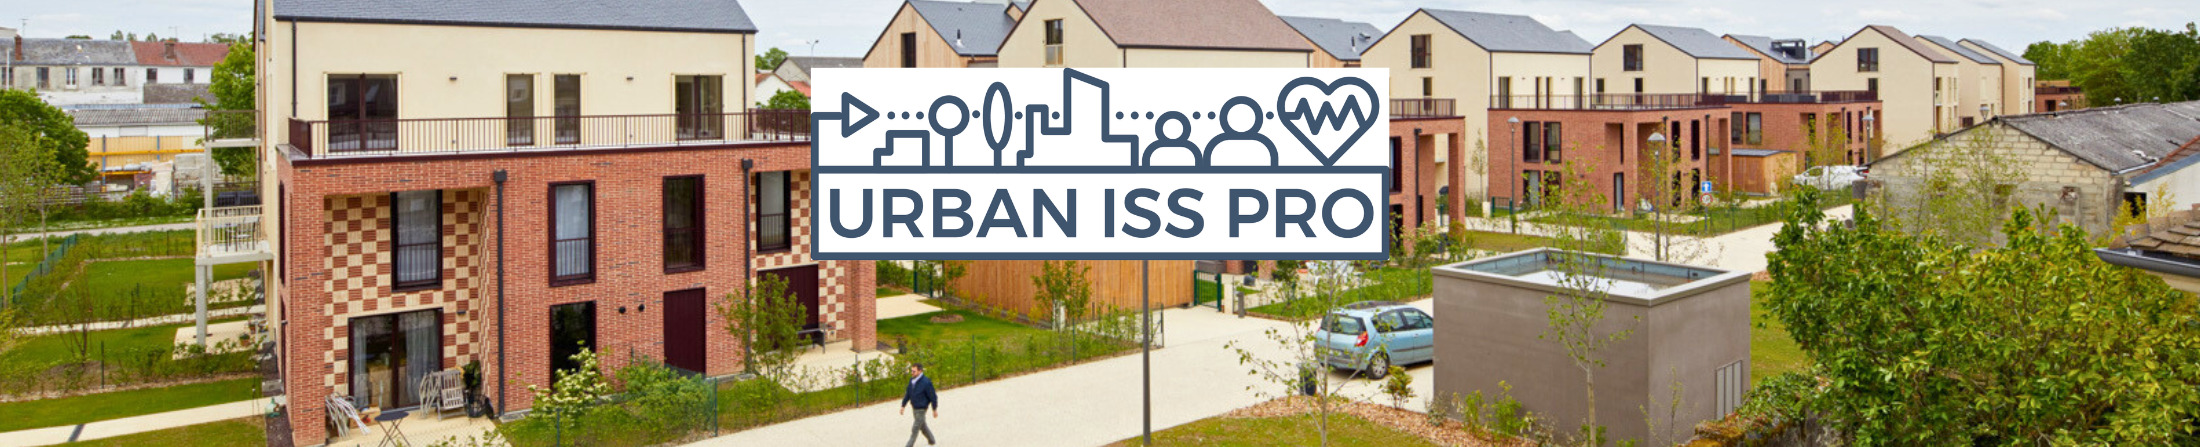 URBAN ISS PRO : une formation et un outil pour faire de la santé un critère de qualité urbaine  